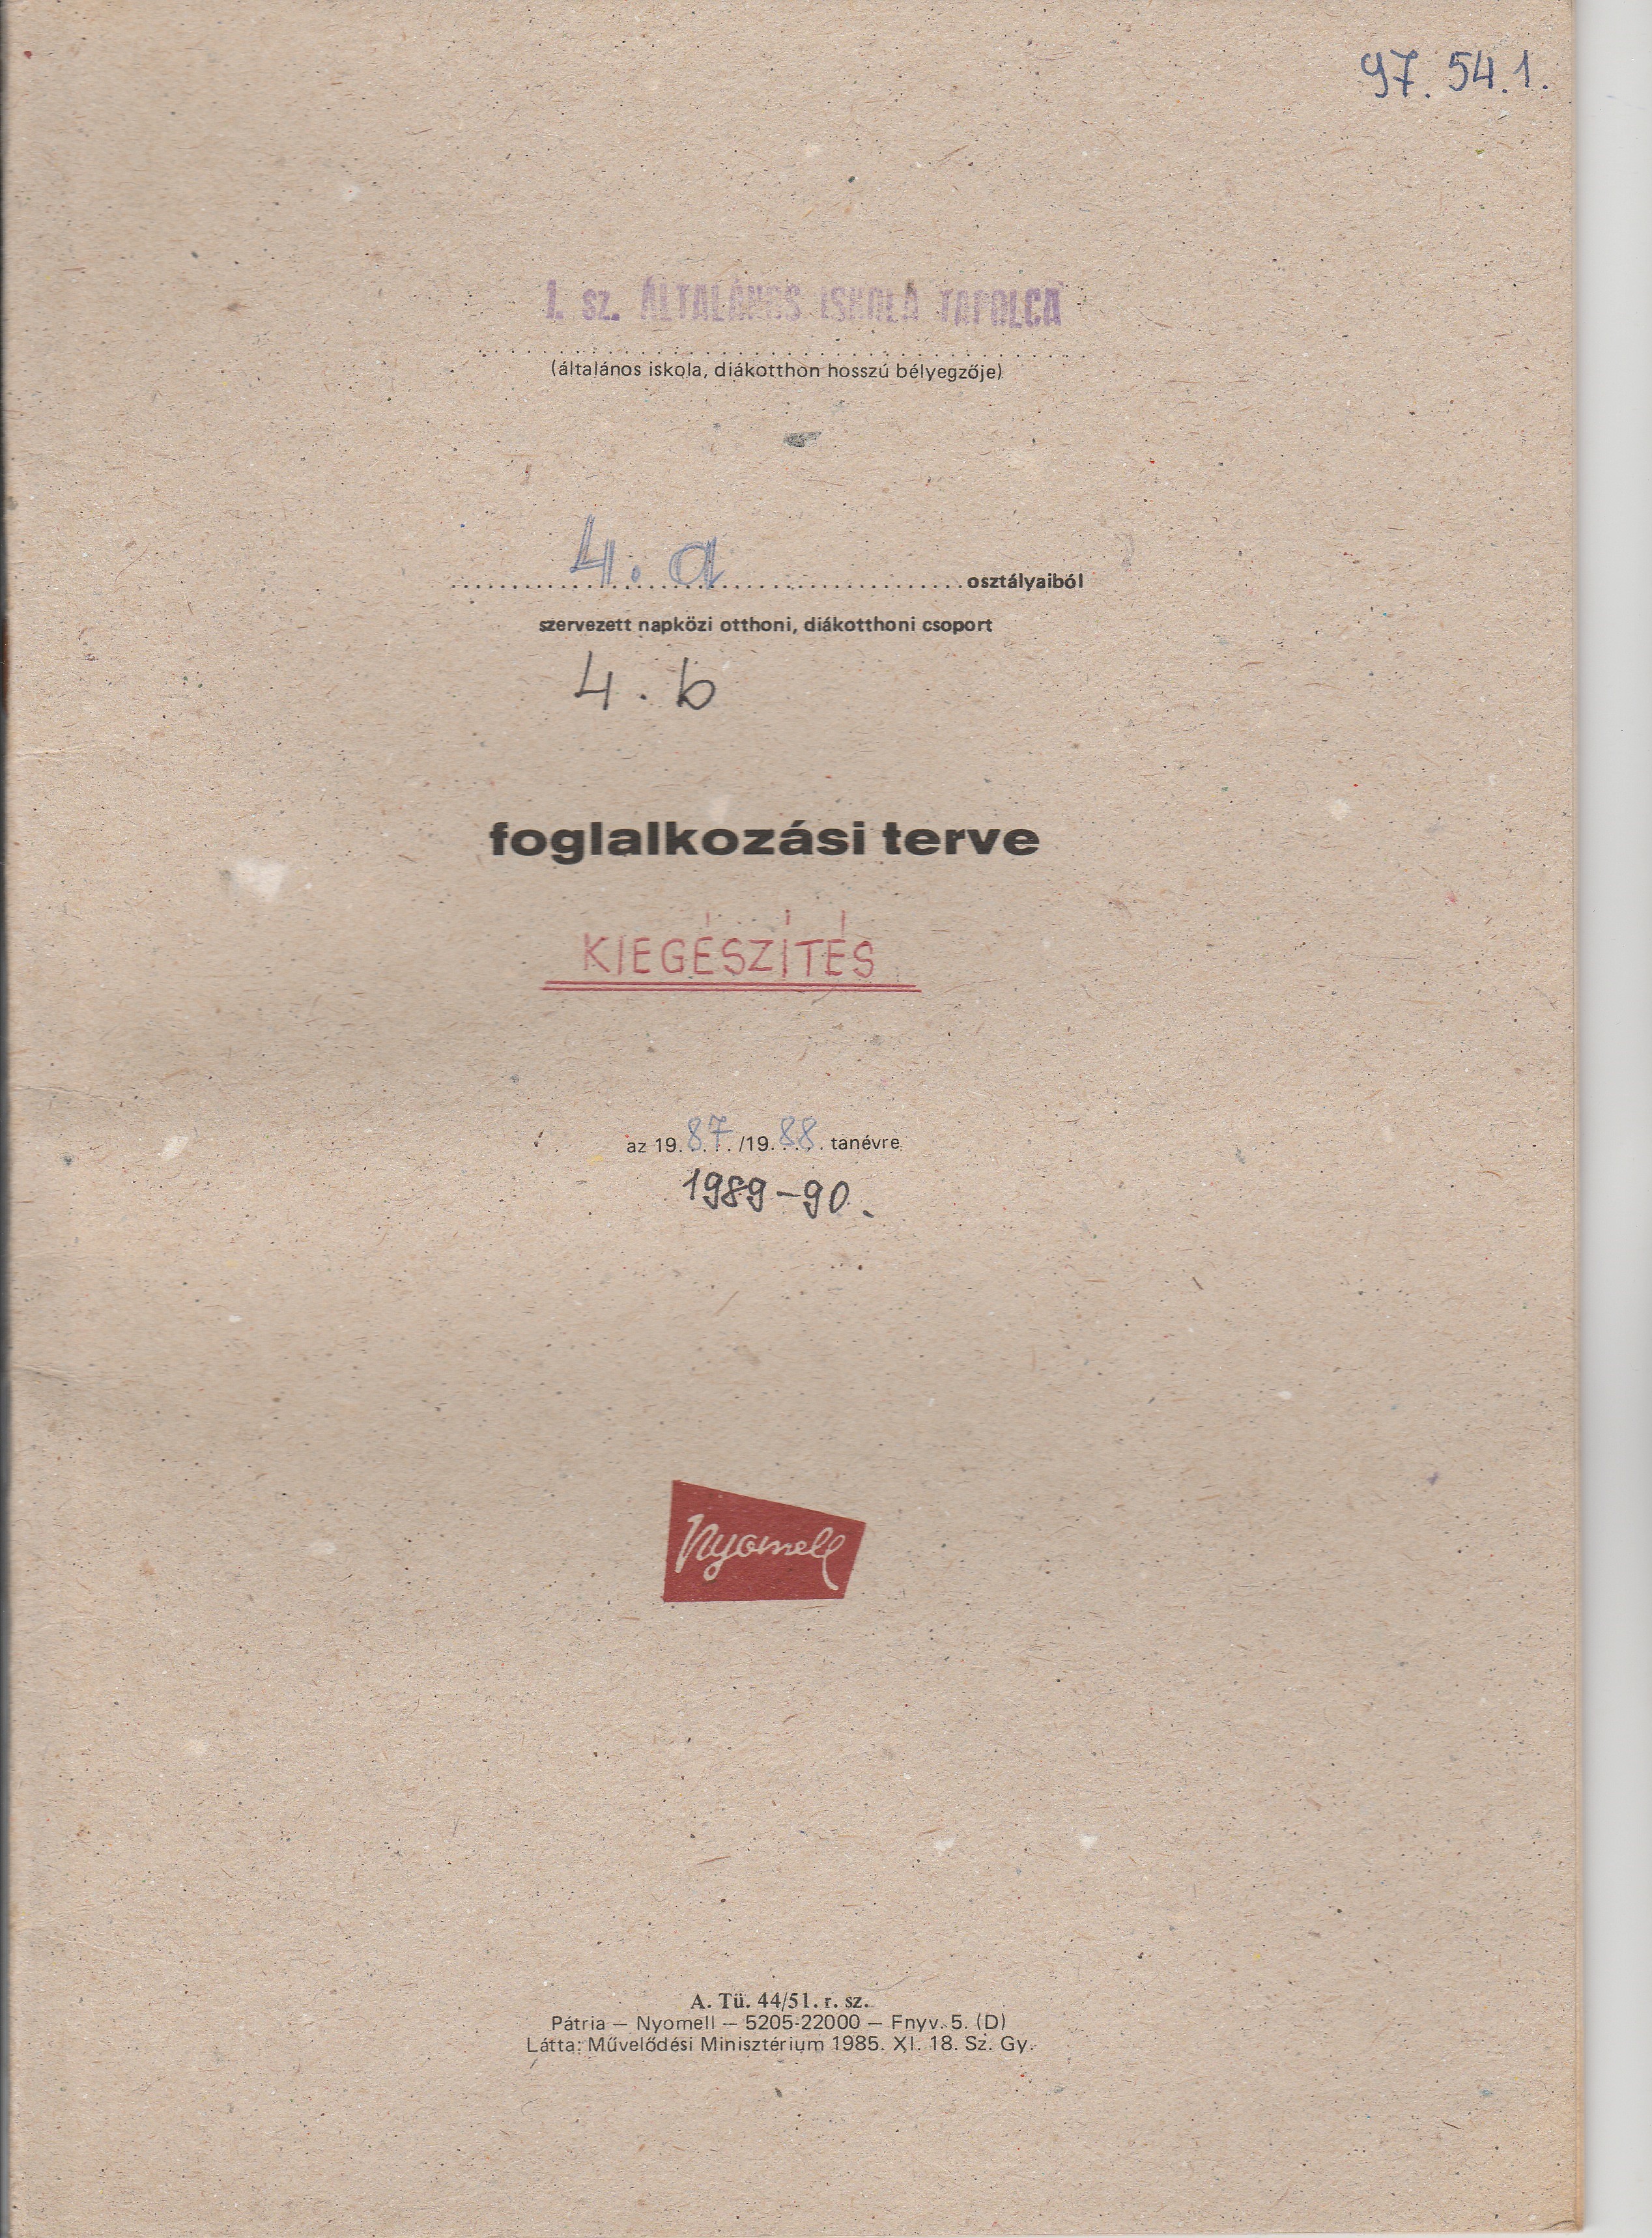 4. osztályos napközis foglalkozási terv kiegészítő része (Tapolcai Városi Múzeum CC BY-NC-SA)